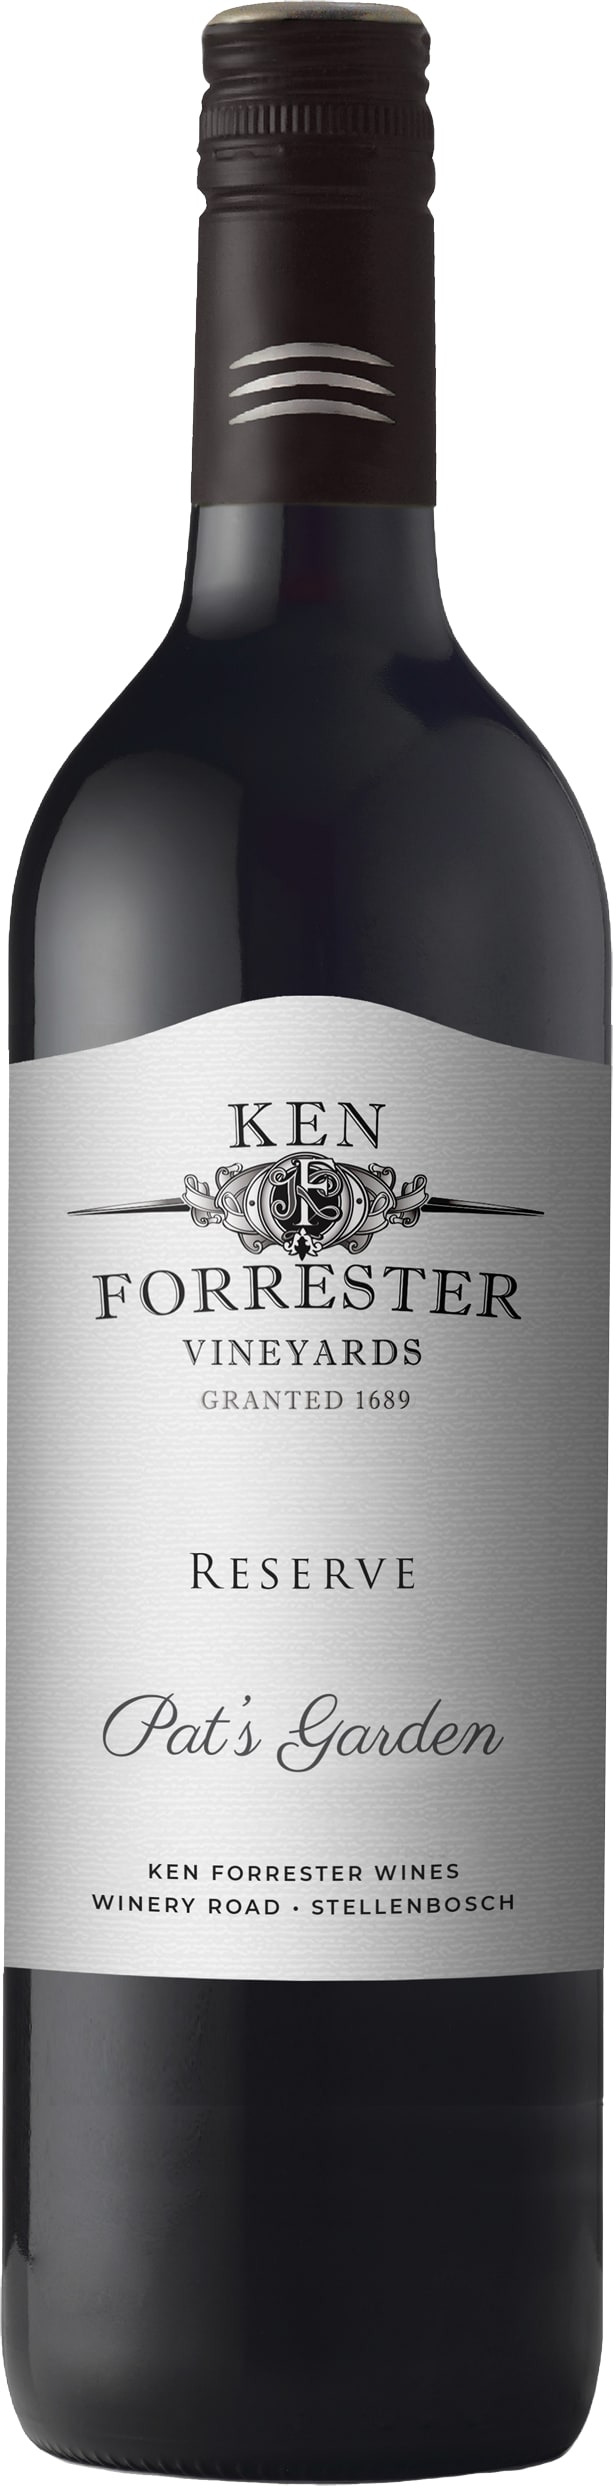 Ken Forrester Wines Reserve Pat's Garden 2019 75cl - Buy Ken Forrester Wines Wines from GREAT WINES DIRECT wine shop